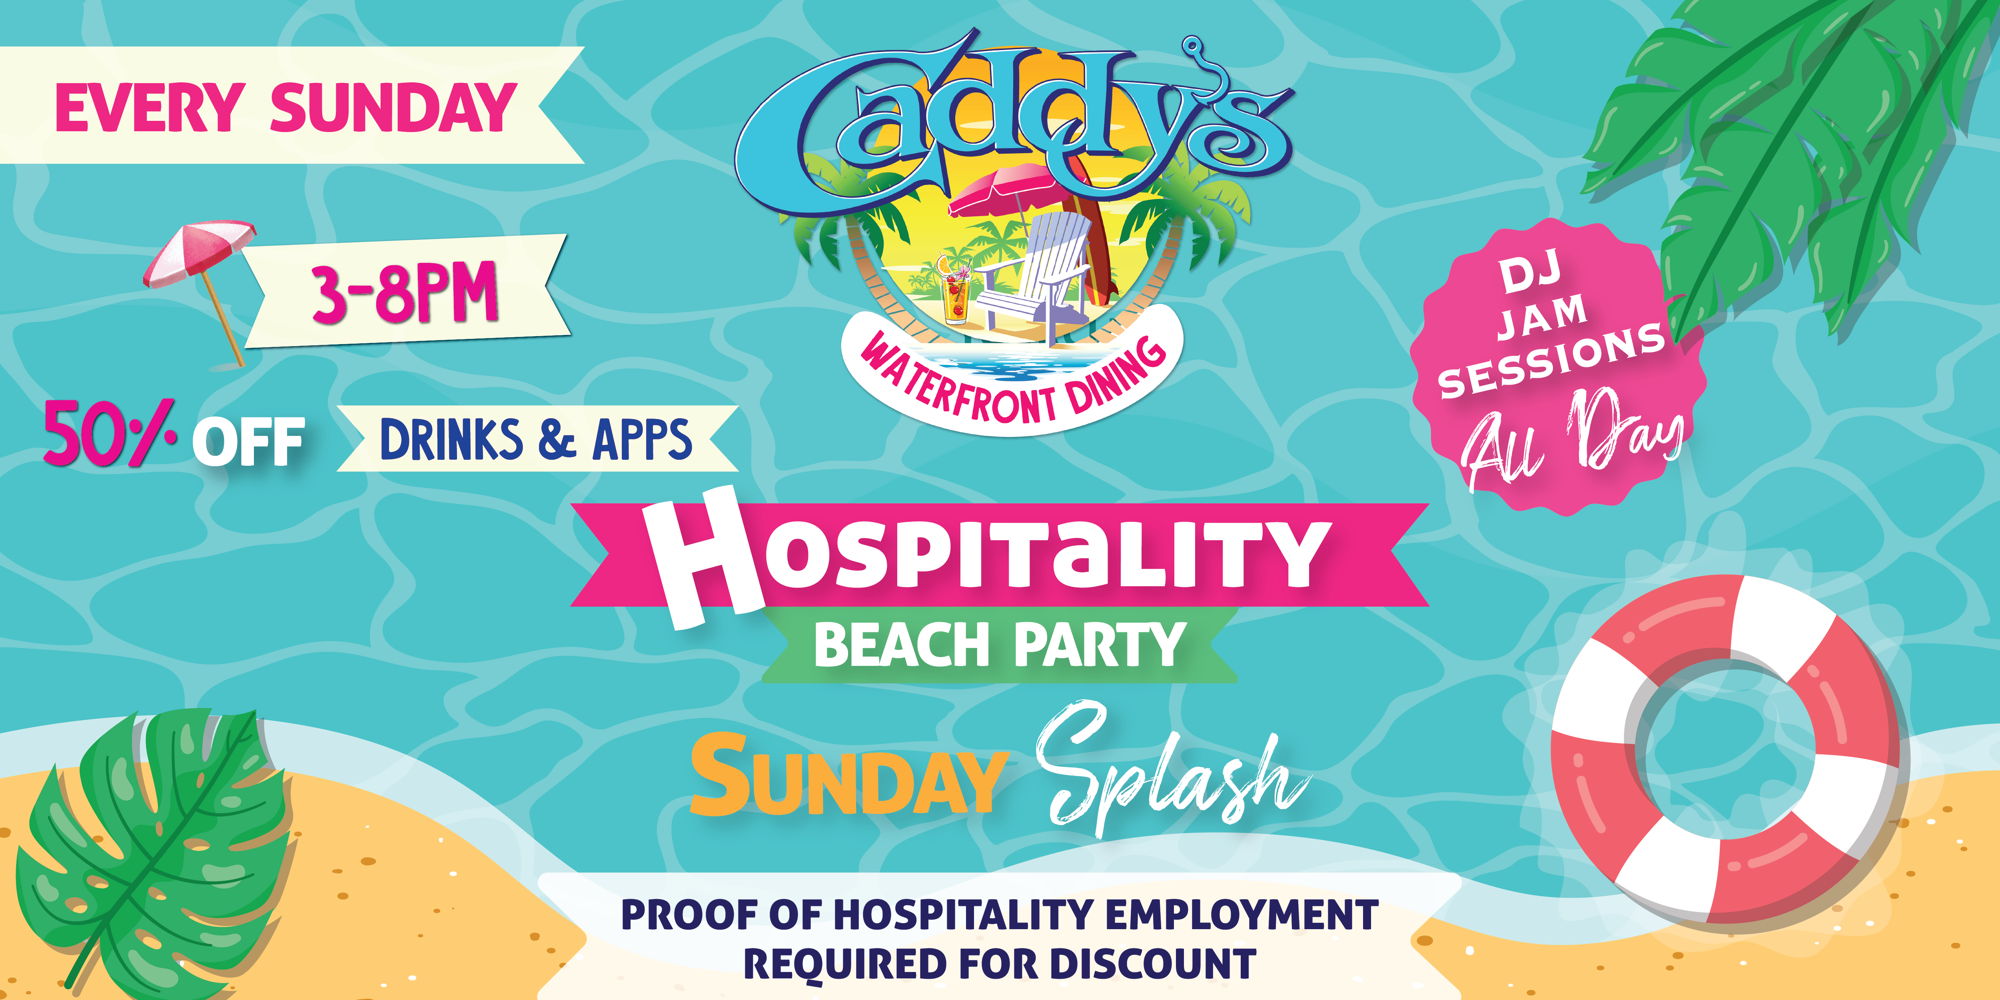 Hospitality Beach Party - Sunday Splash! promotional image